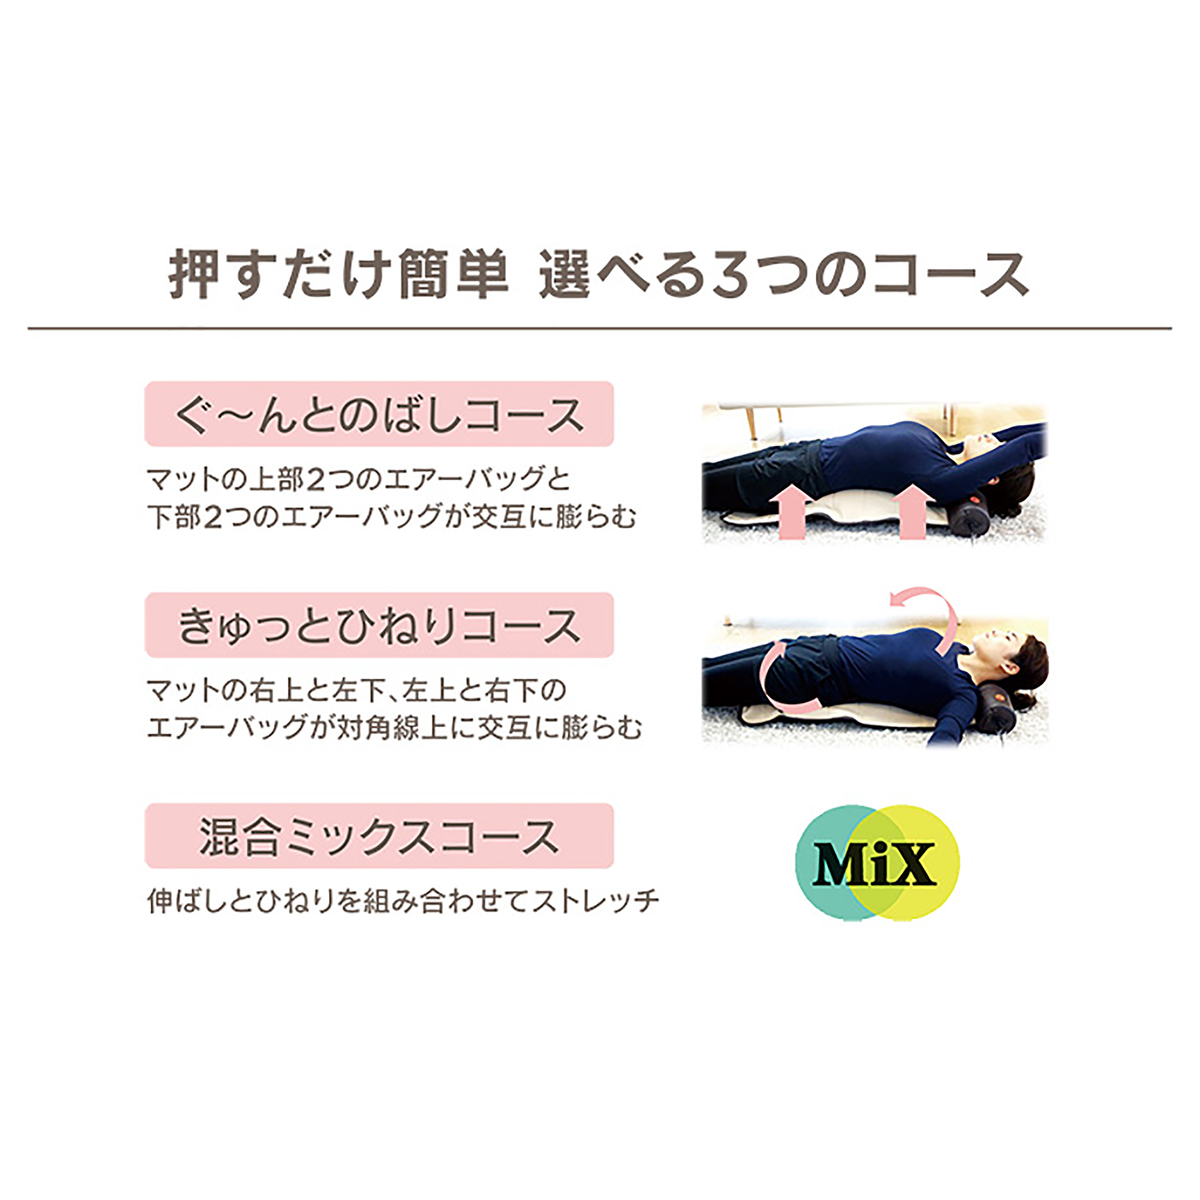 ライフフィット 寝るだけ簡単ストレッチ エアー4 - QVC.jp